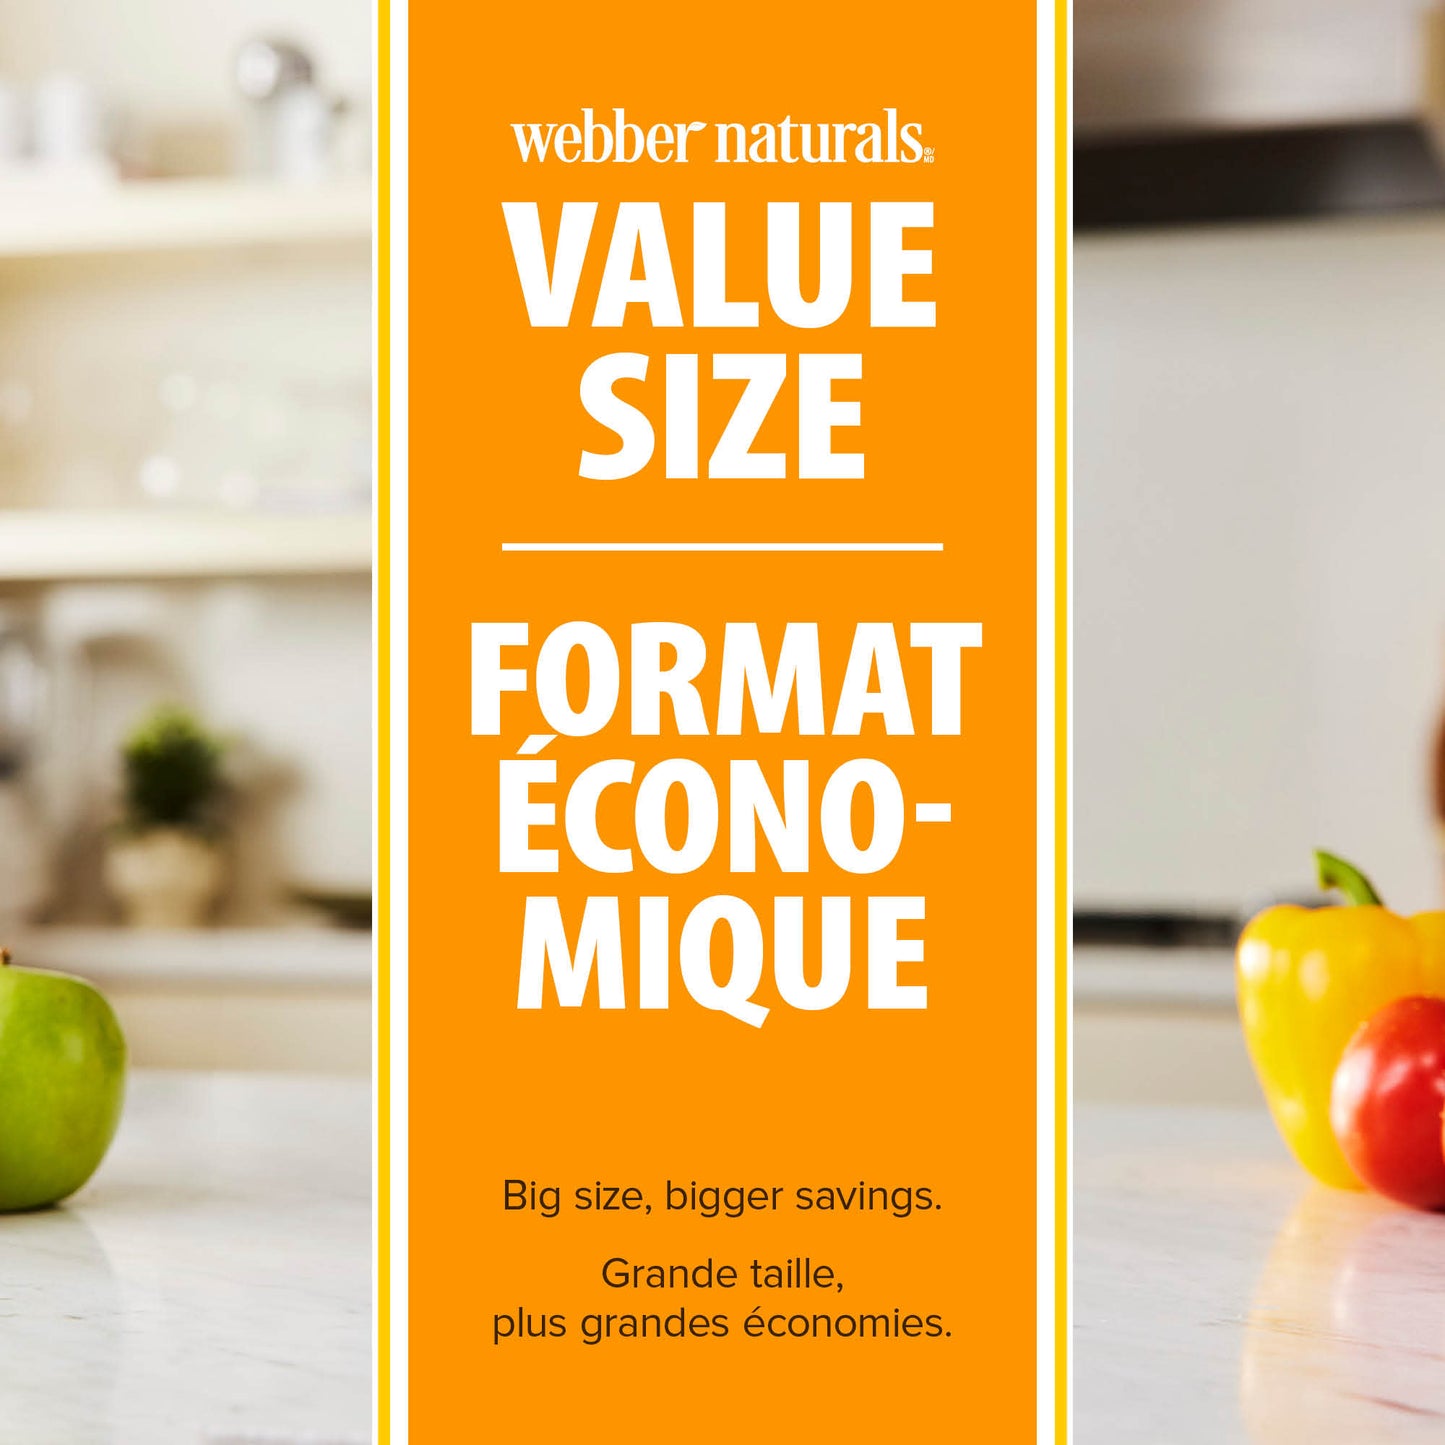 Vitamine C à croquer orange naturelle for Webber Naturals|v|hi-res|WN3276